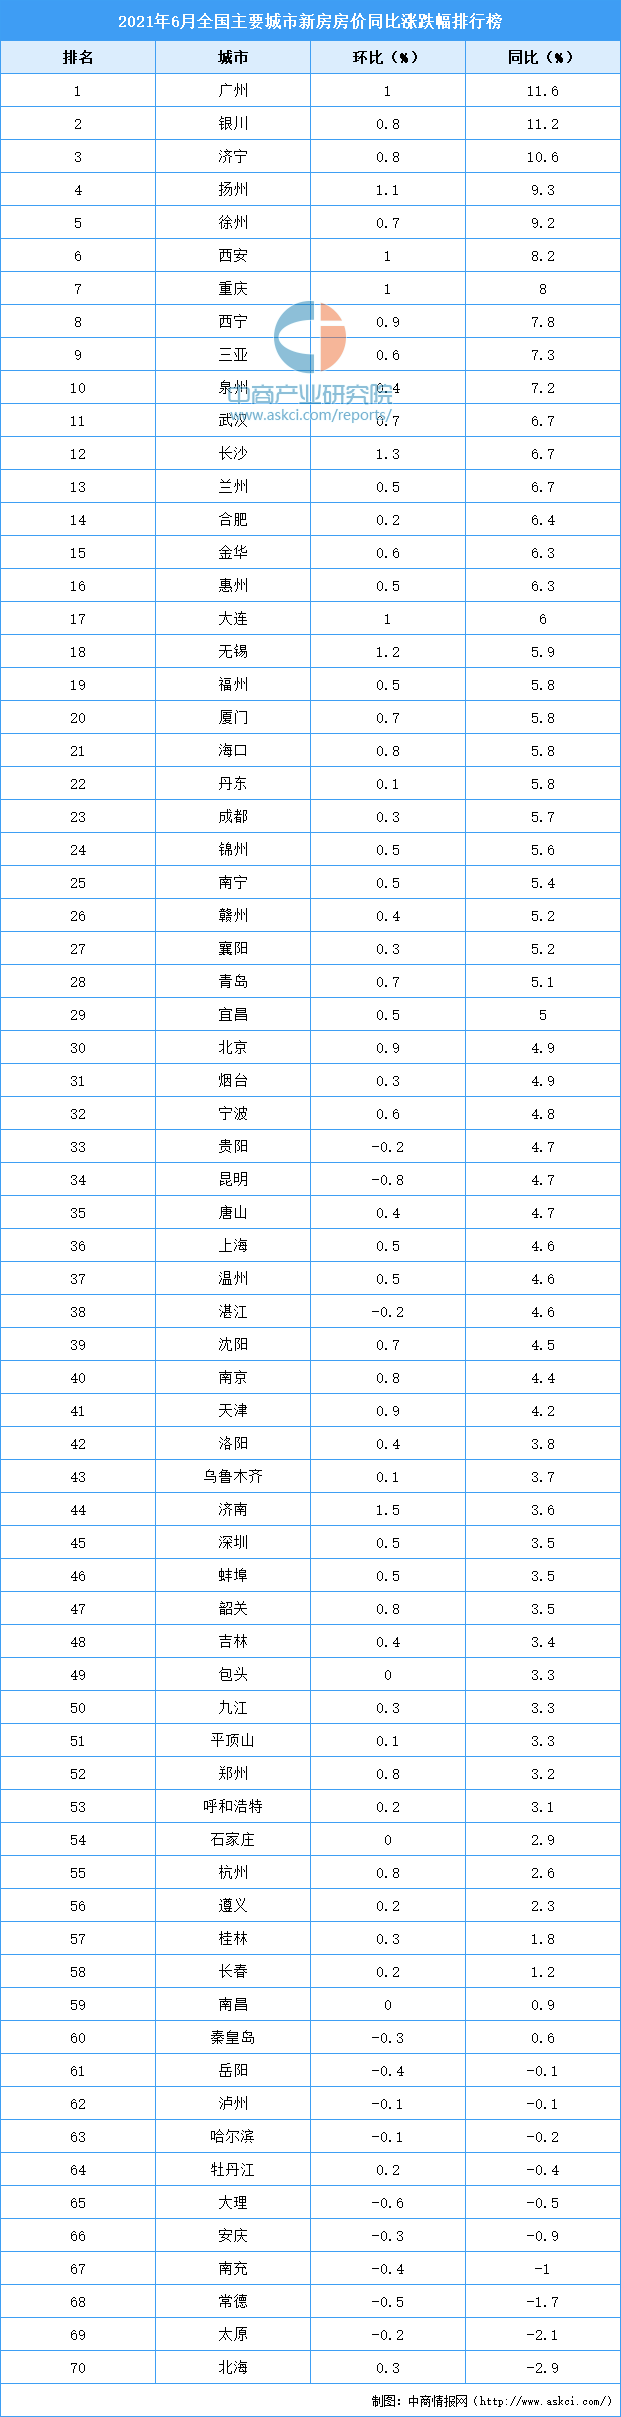 广州房价排行_2021年上半年新房房价涨跌排行榜:广州领涨全国银川位居第二(图)